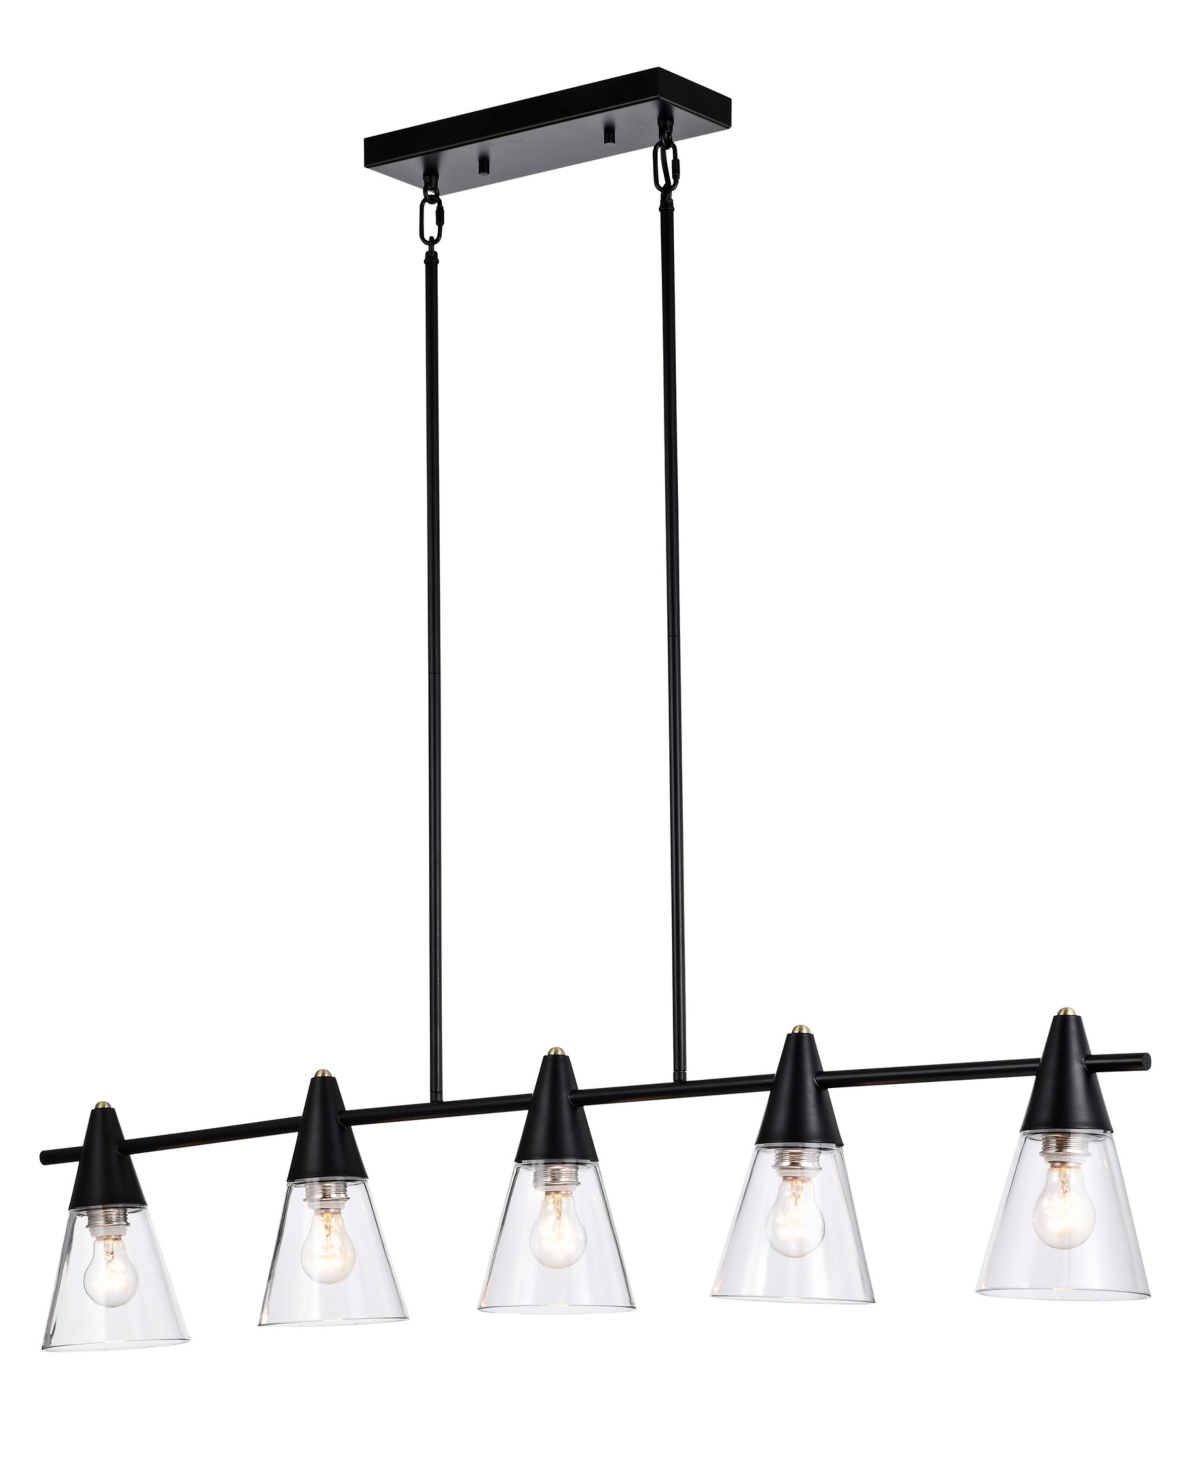 Home Accessories Mooncheeks 10" 5-light Indoor Chandelier With Light Kit In Matte Black